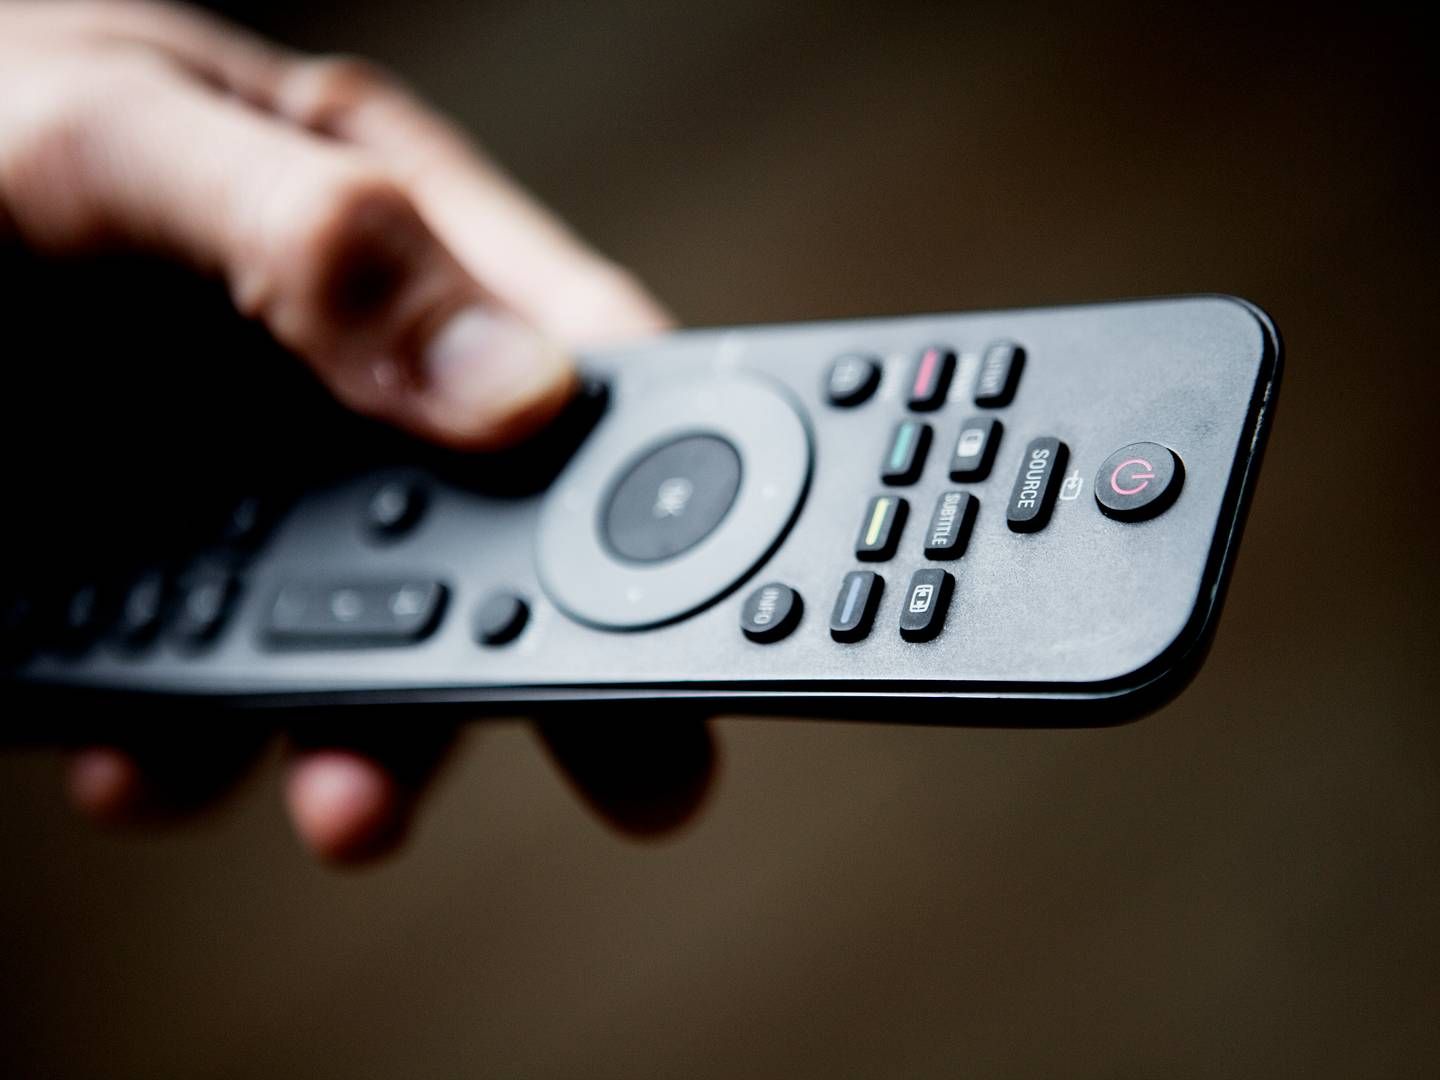 TV 2 hæver nu priserne på dets streamingtjeneste TV 2 Play. | Foto: Thomas Borberg / Politiken / Ritzau Scanpix